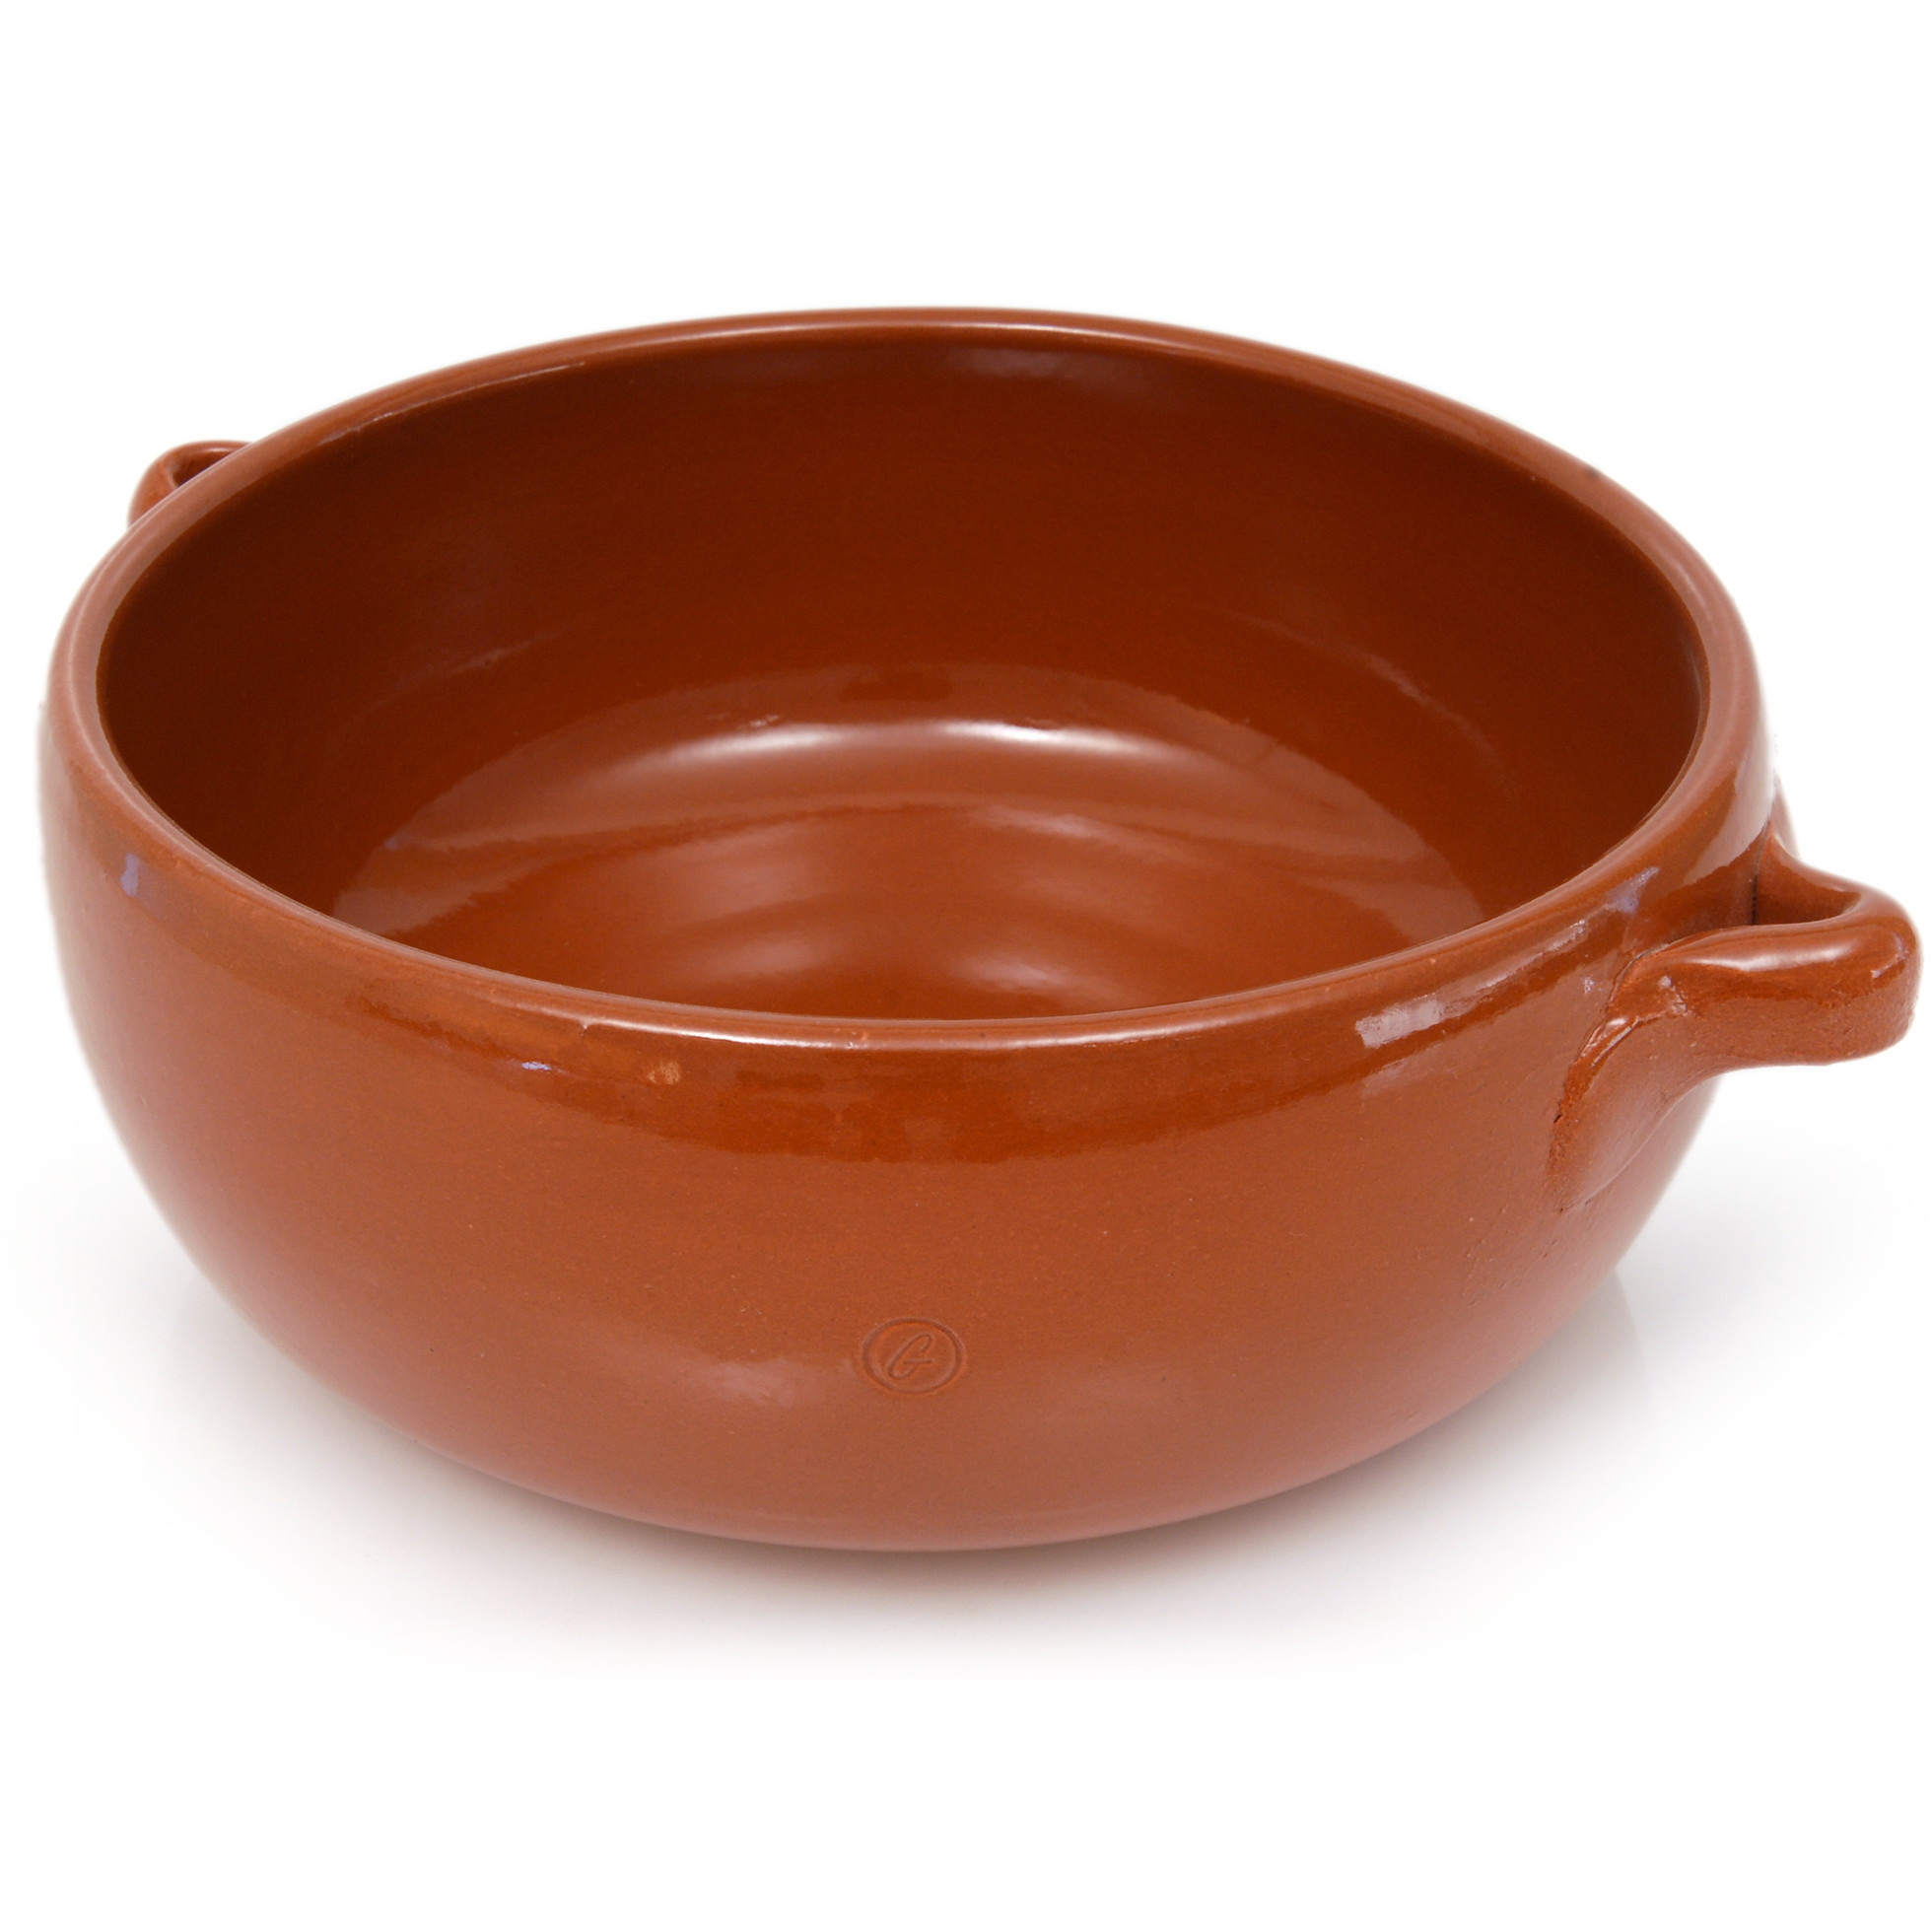 Onion Soup Bowls
 Graupera Pottery Artisans 17 oz French ion Soup Bowl